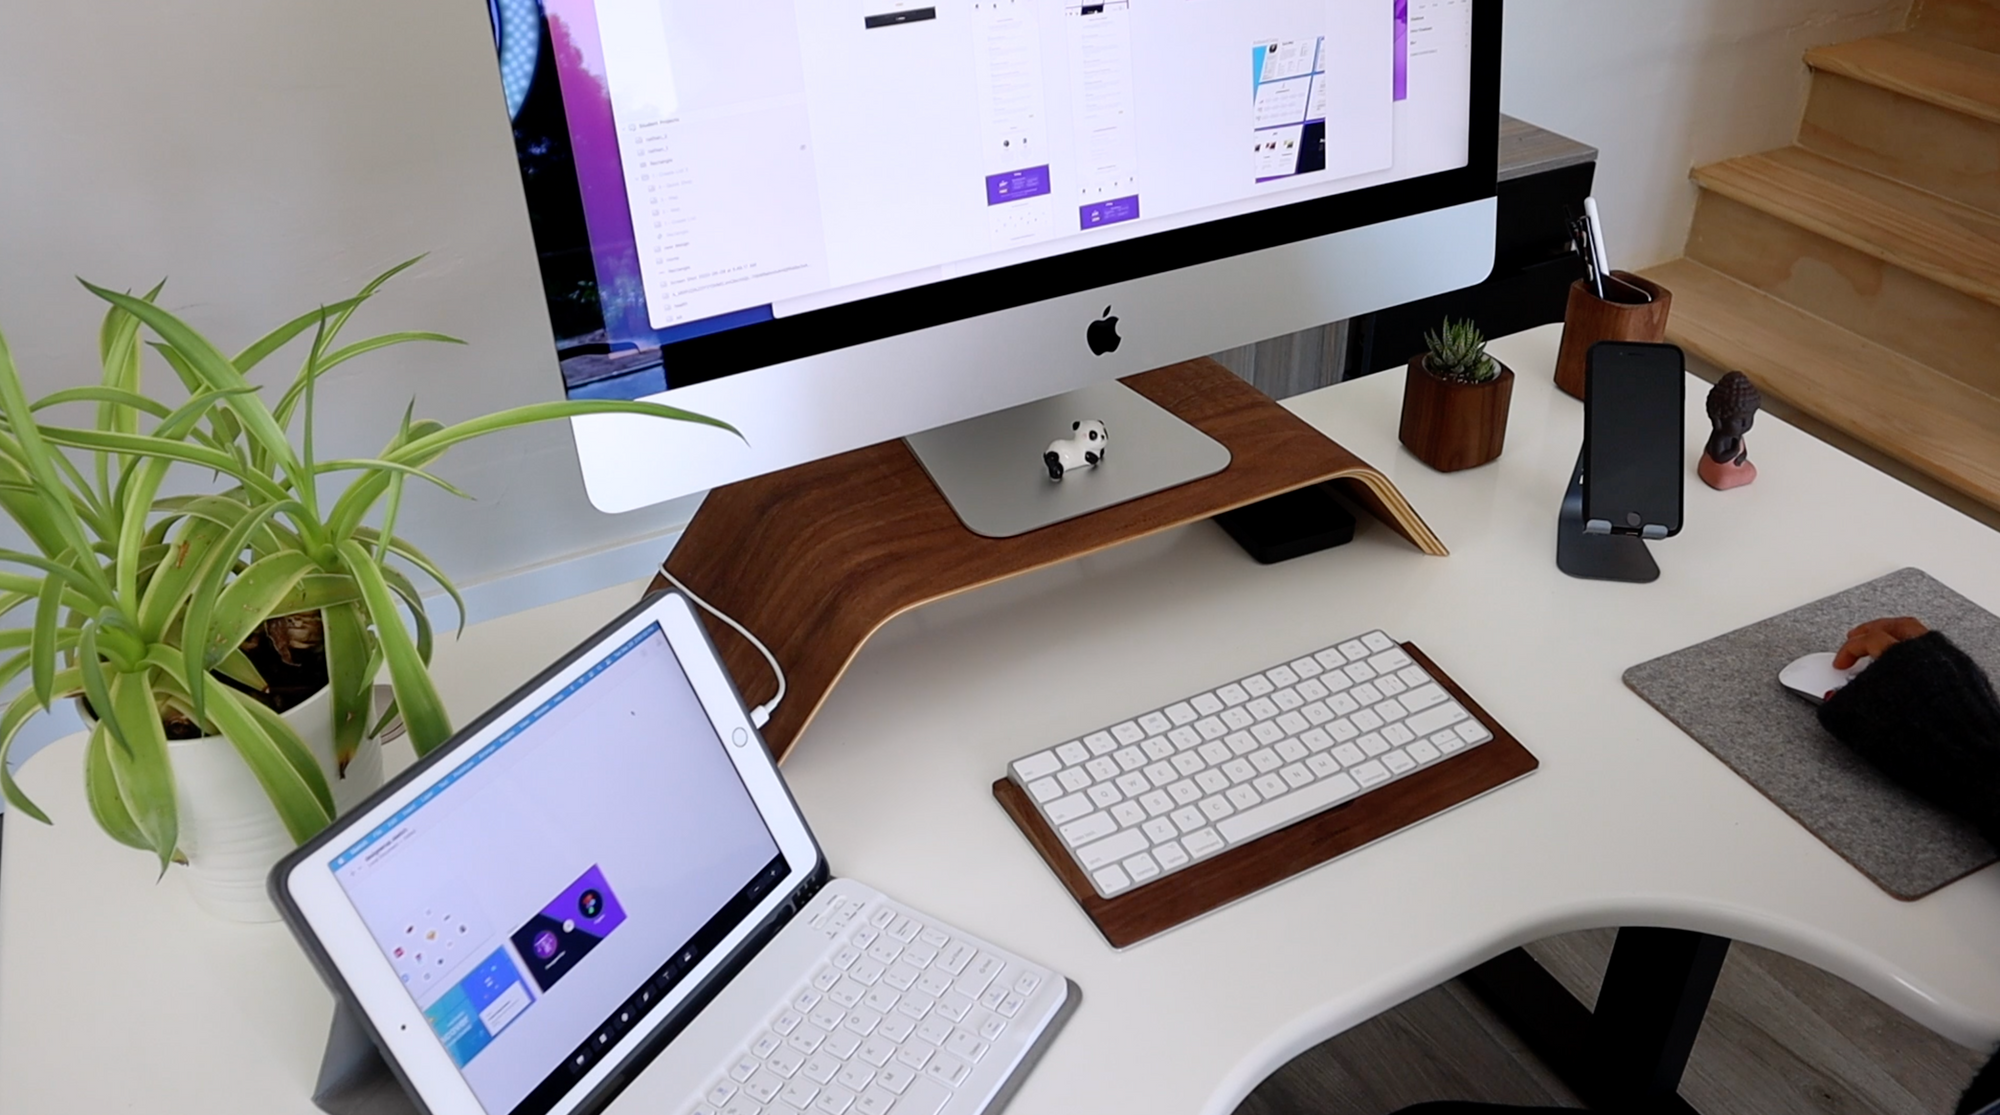 Apple iPad and iMac on desk